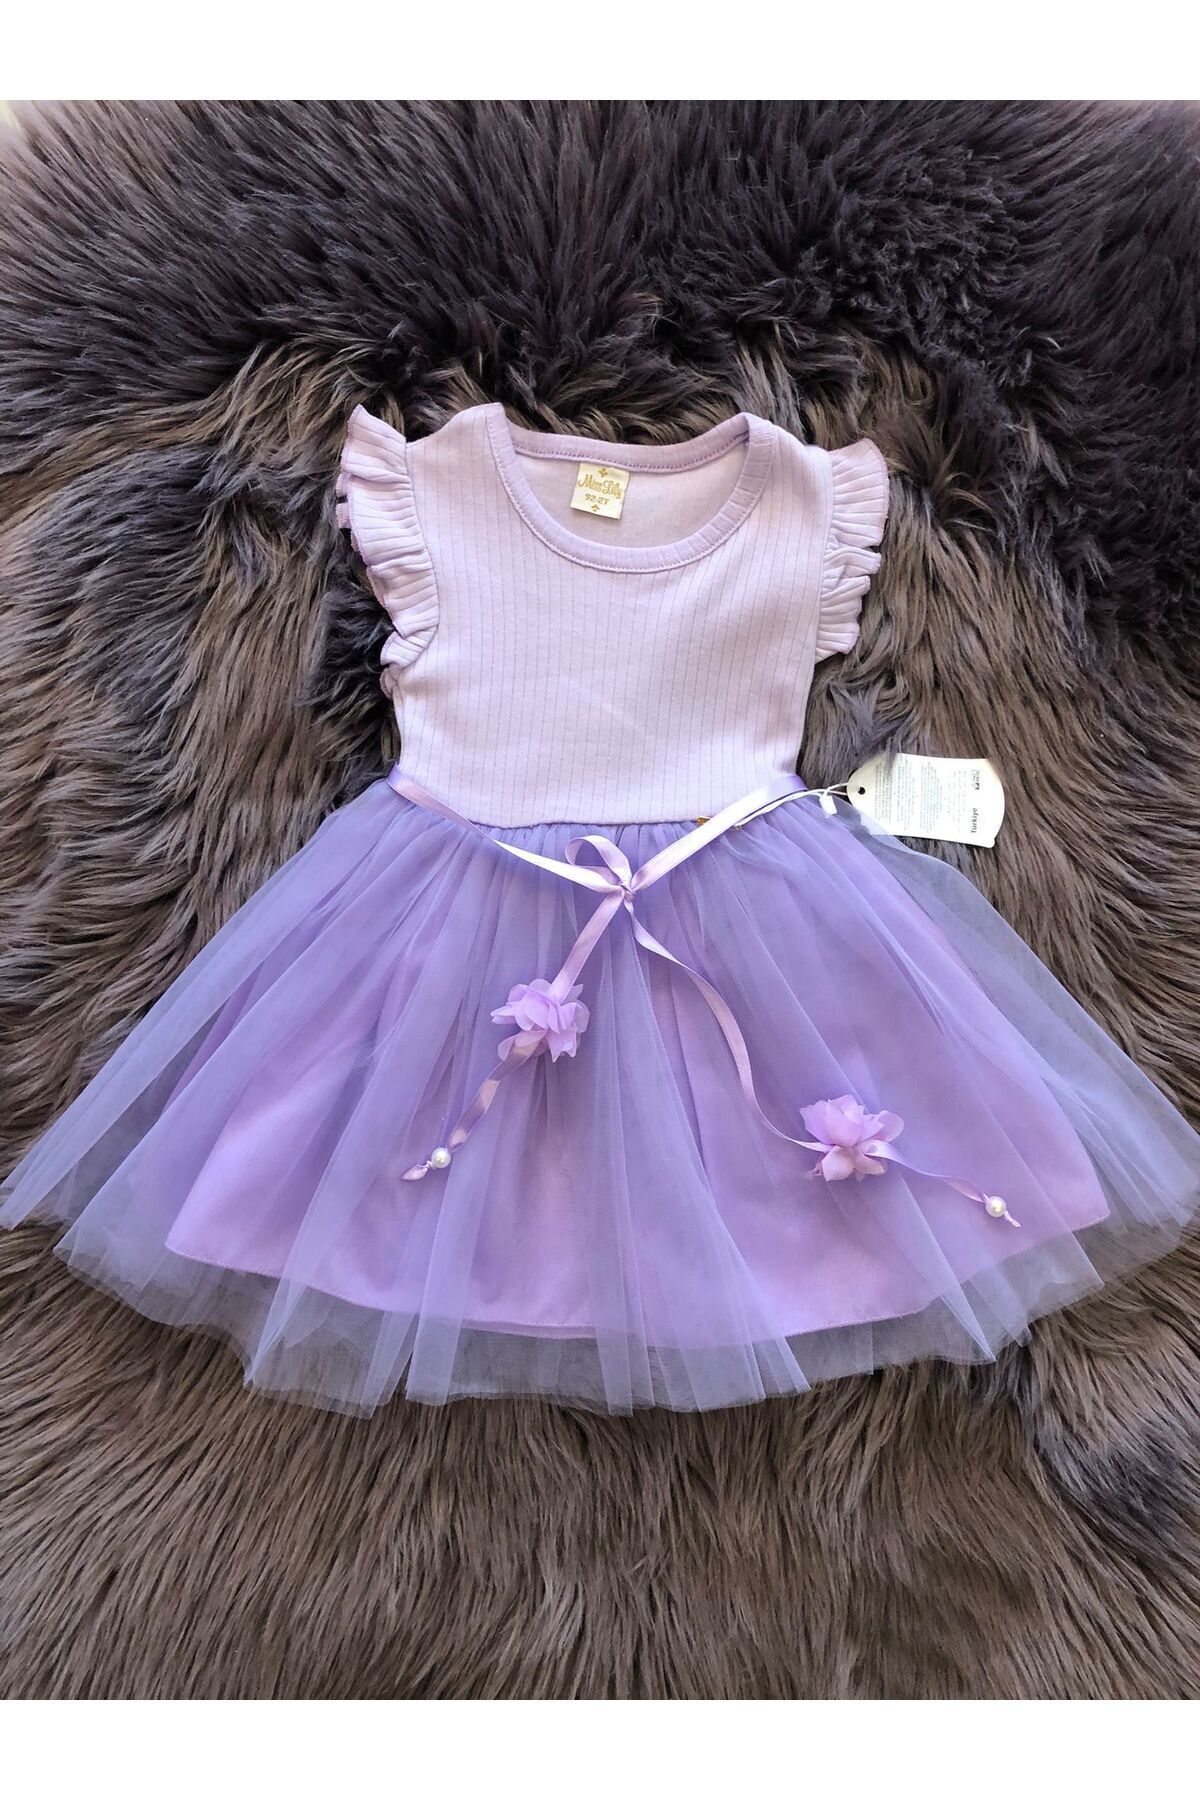 Retro Women Kız Çocuk Özel Gün Doğum Günü Günlük Yılbaşı Hediye Pamuklu Tül Prenses Lila Elbise